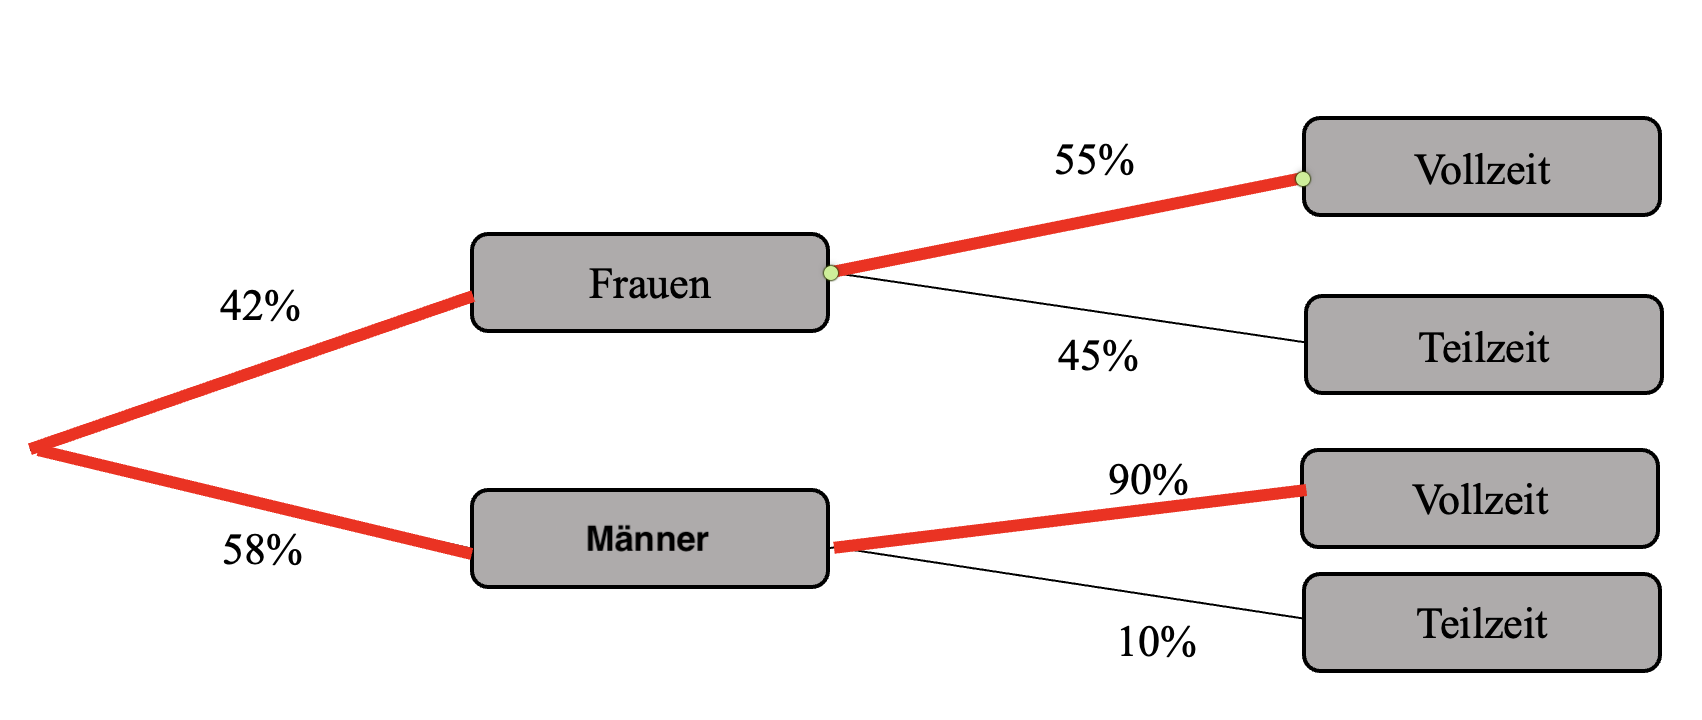 Baumdiagramm relative Häufigkeit Lösung v2.png